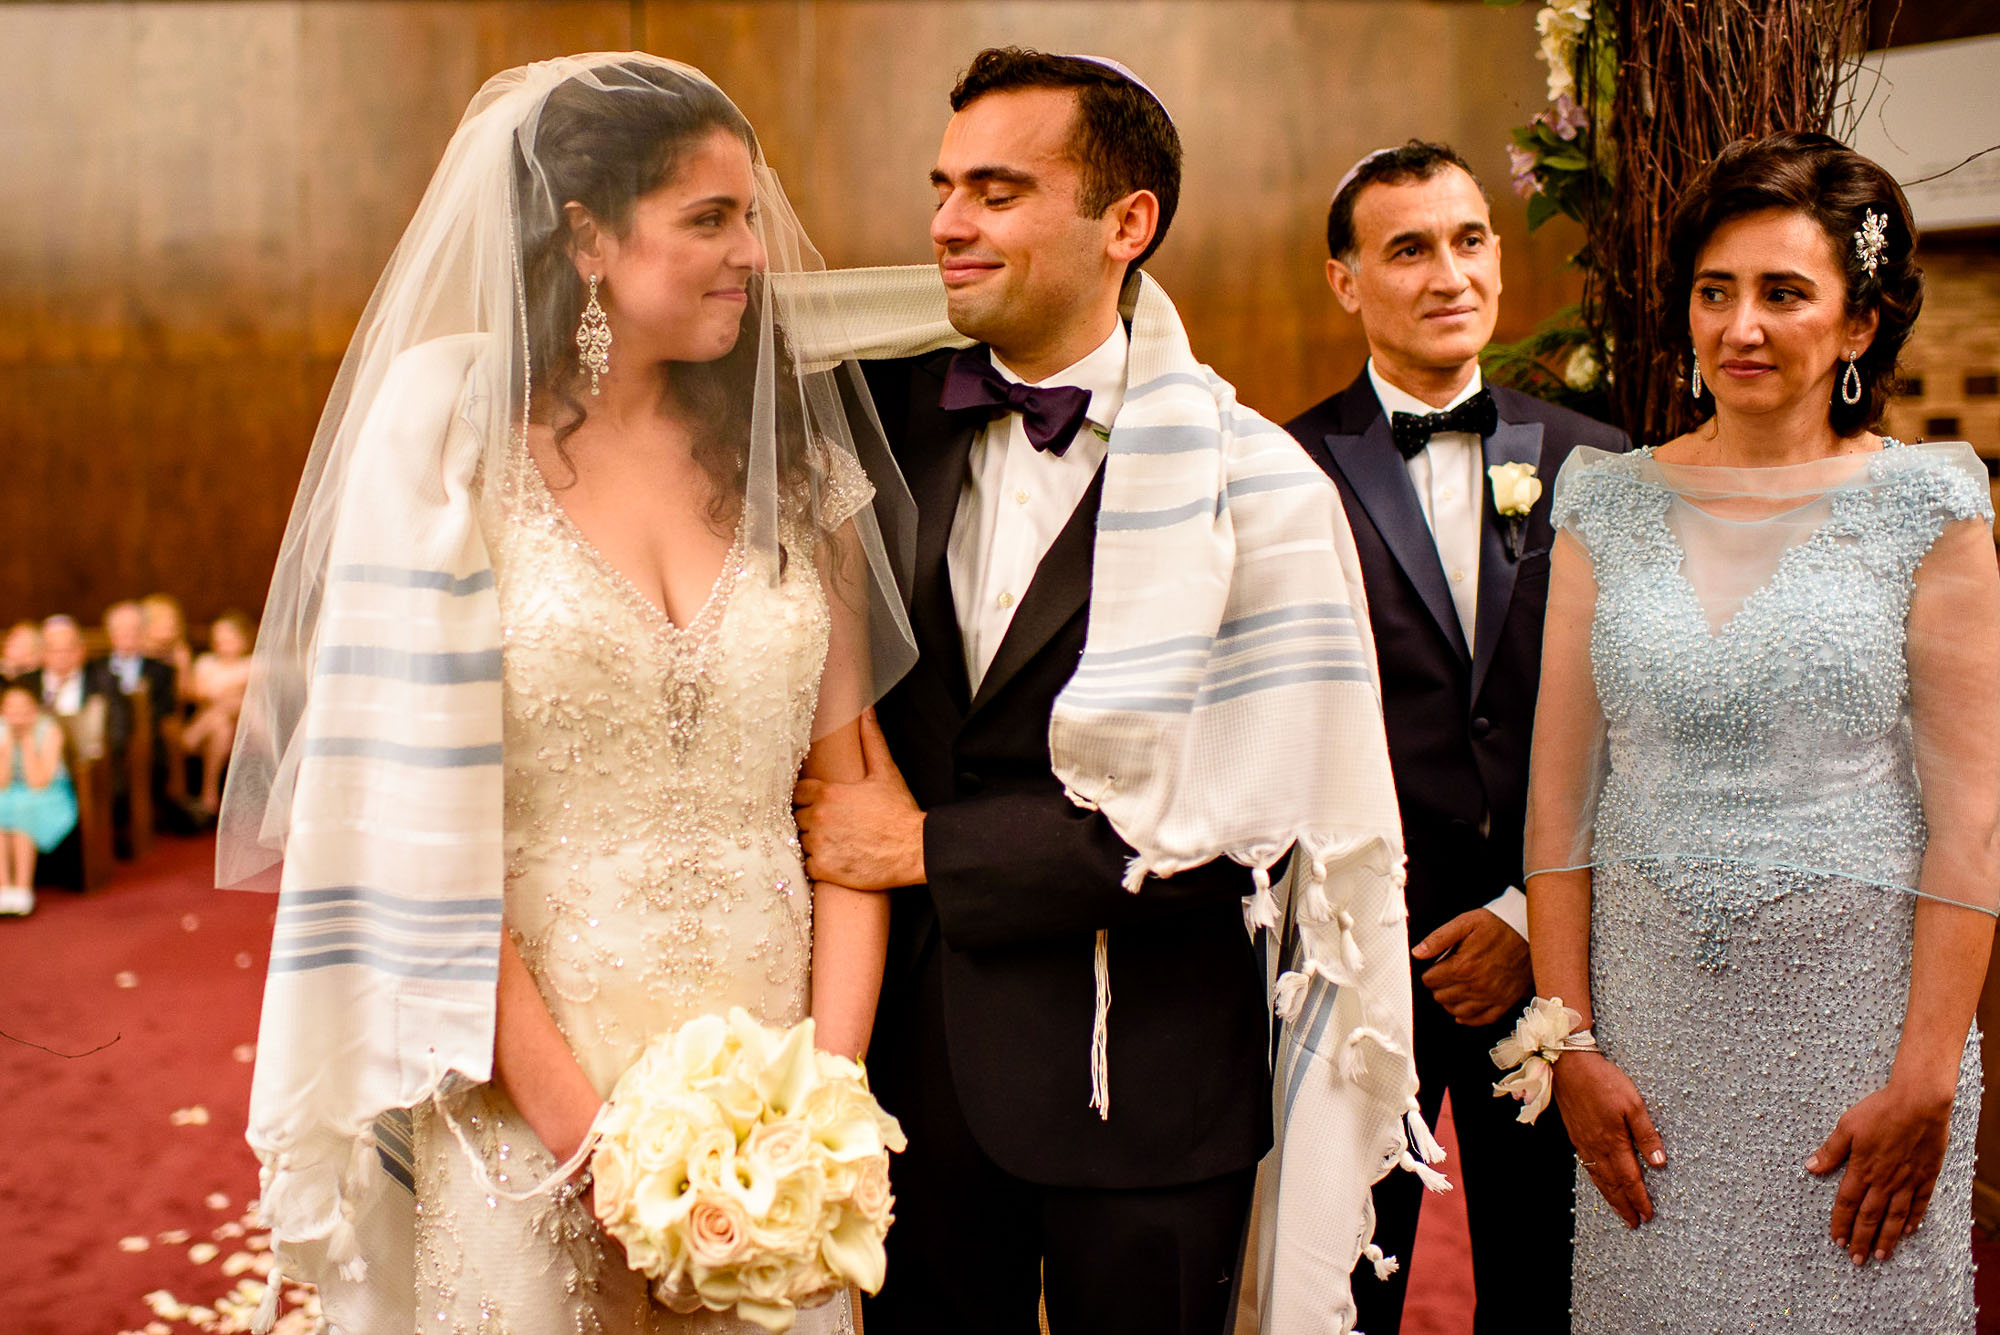 The Sephardic Temple jewish wedding ceremony